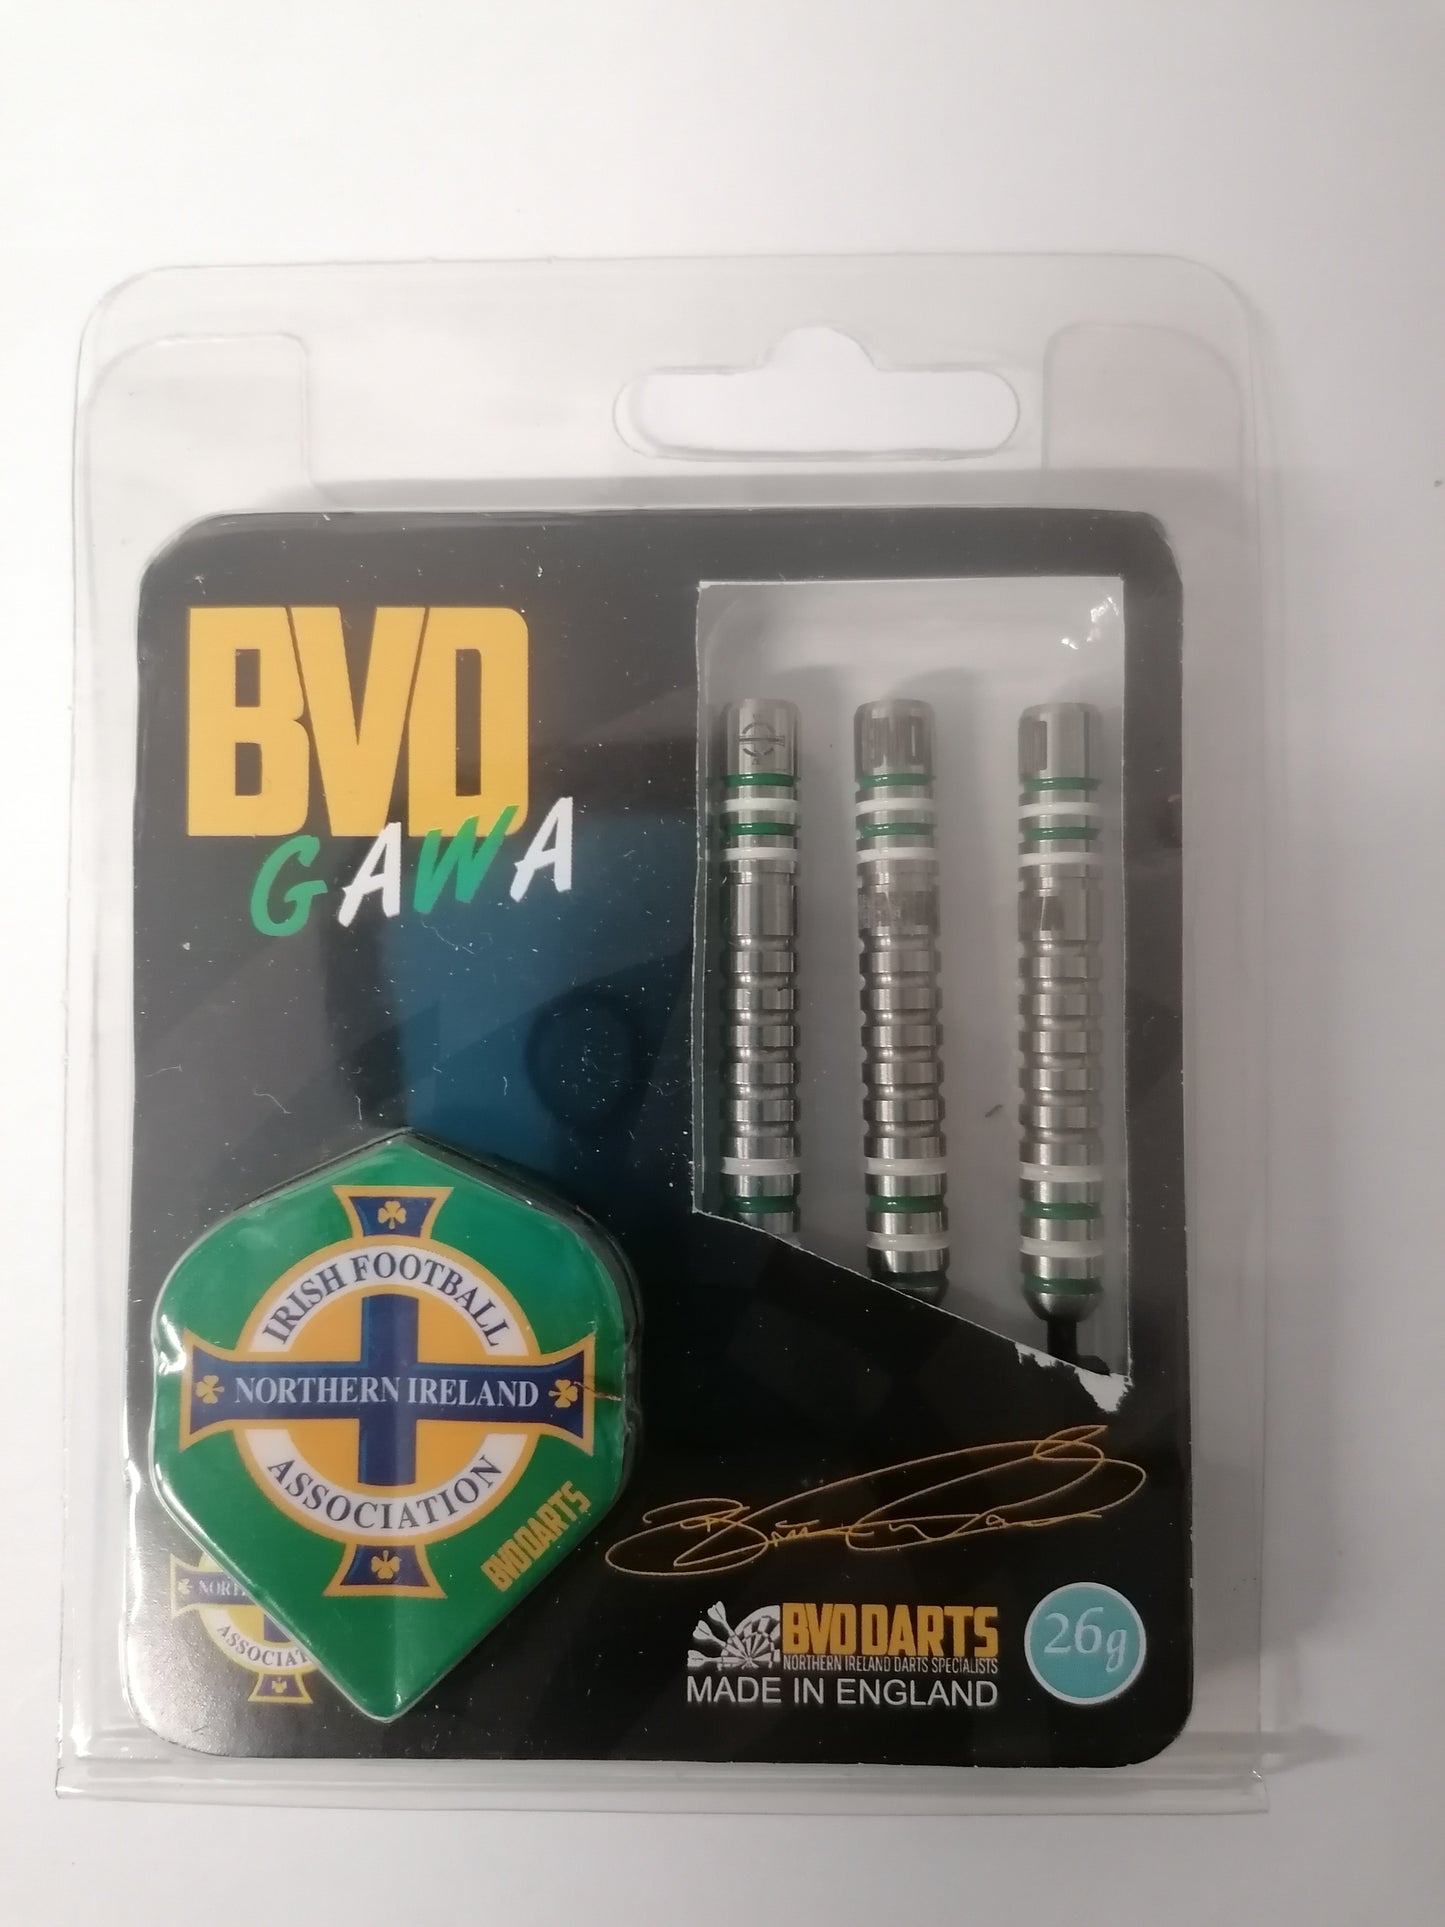 BVD GAWA (Northern Ireland) 90% Tungsten Steel Tip Darts